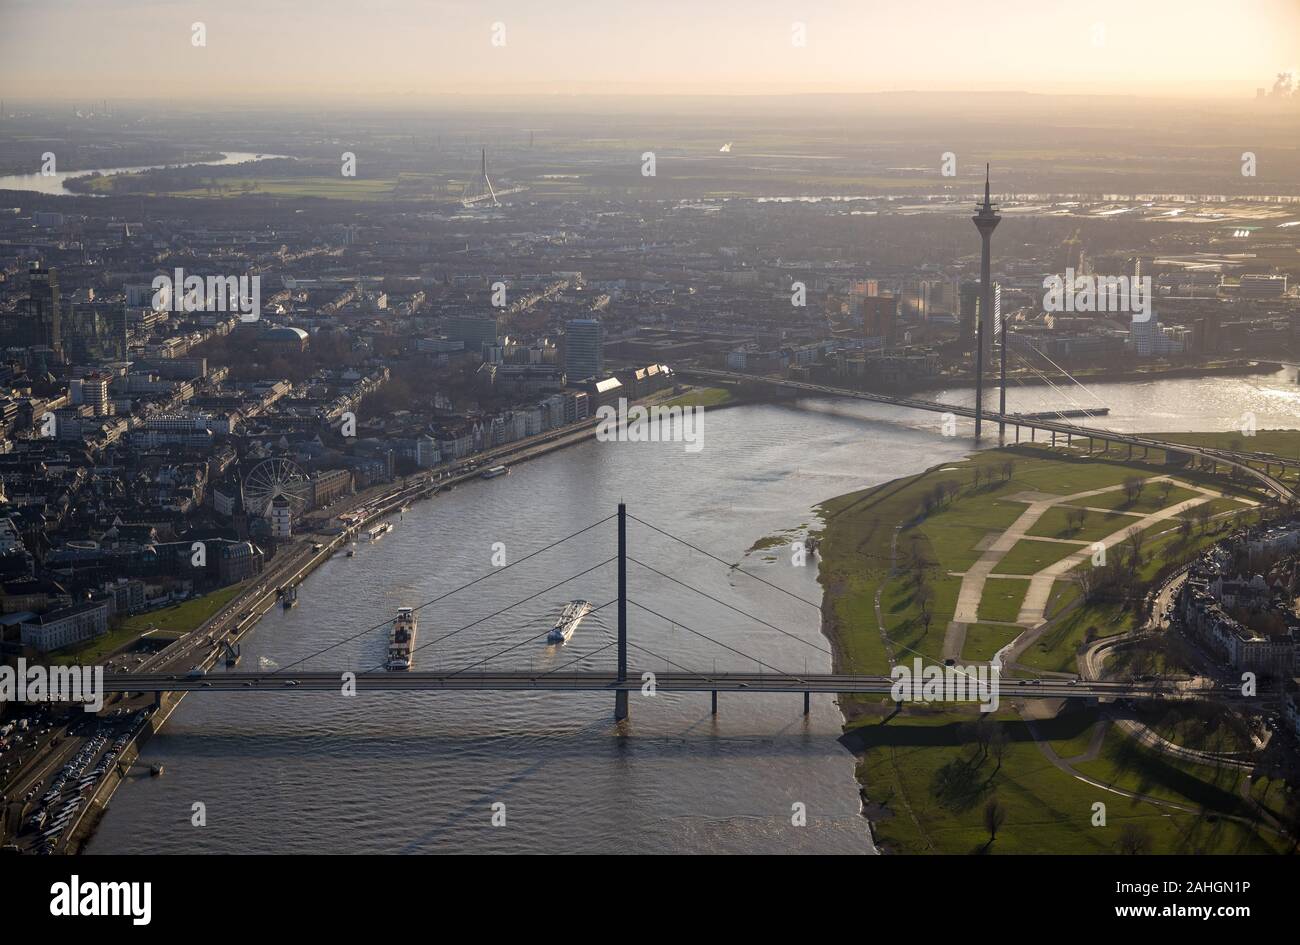 Luftbild, Stadtansicht, Schifffahrt auf dem Rhein, Fluss Rhein, Oberkasseler Brücke, Rheinkniebrücke, Rheinturm, Düsseldorf, Rheinland, Nordrhein-West Stock Photo